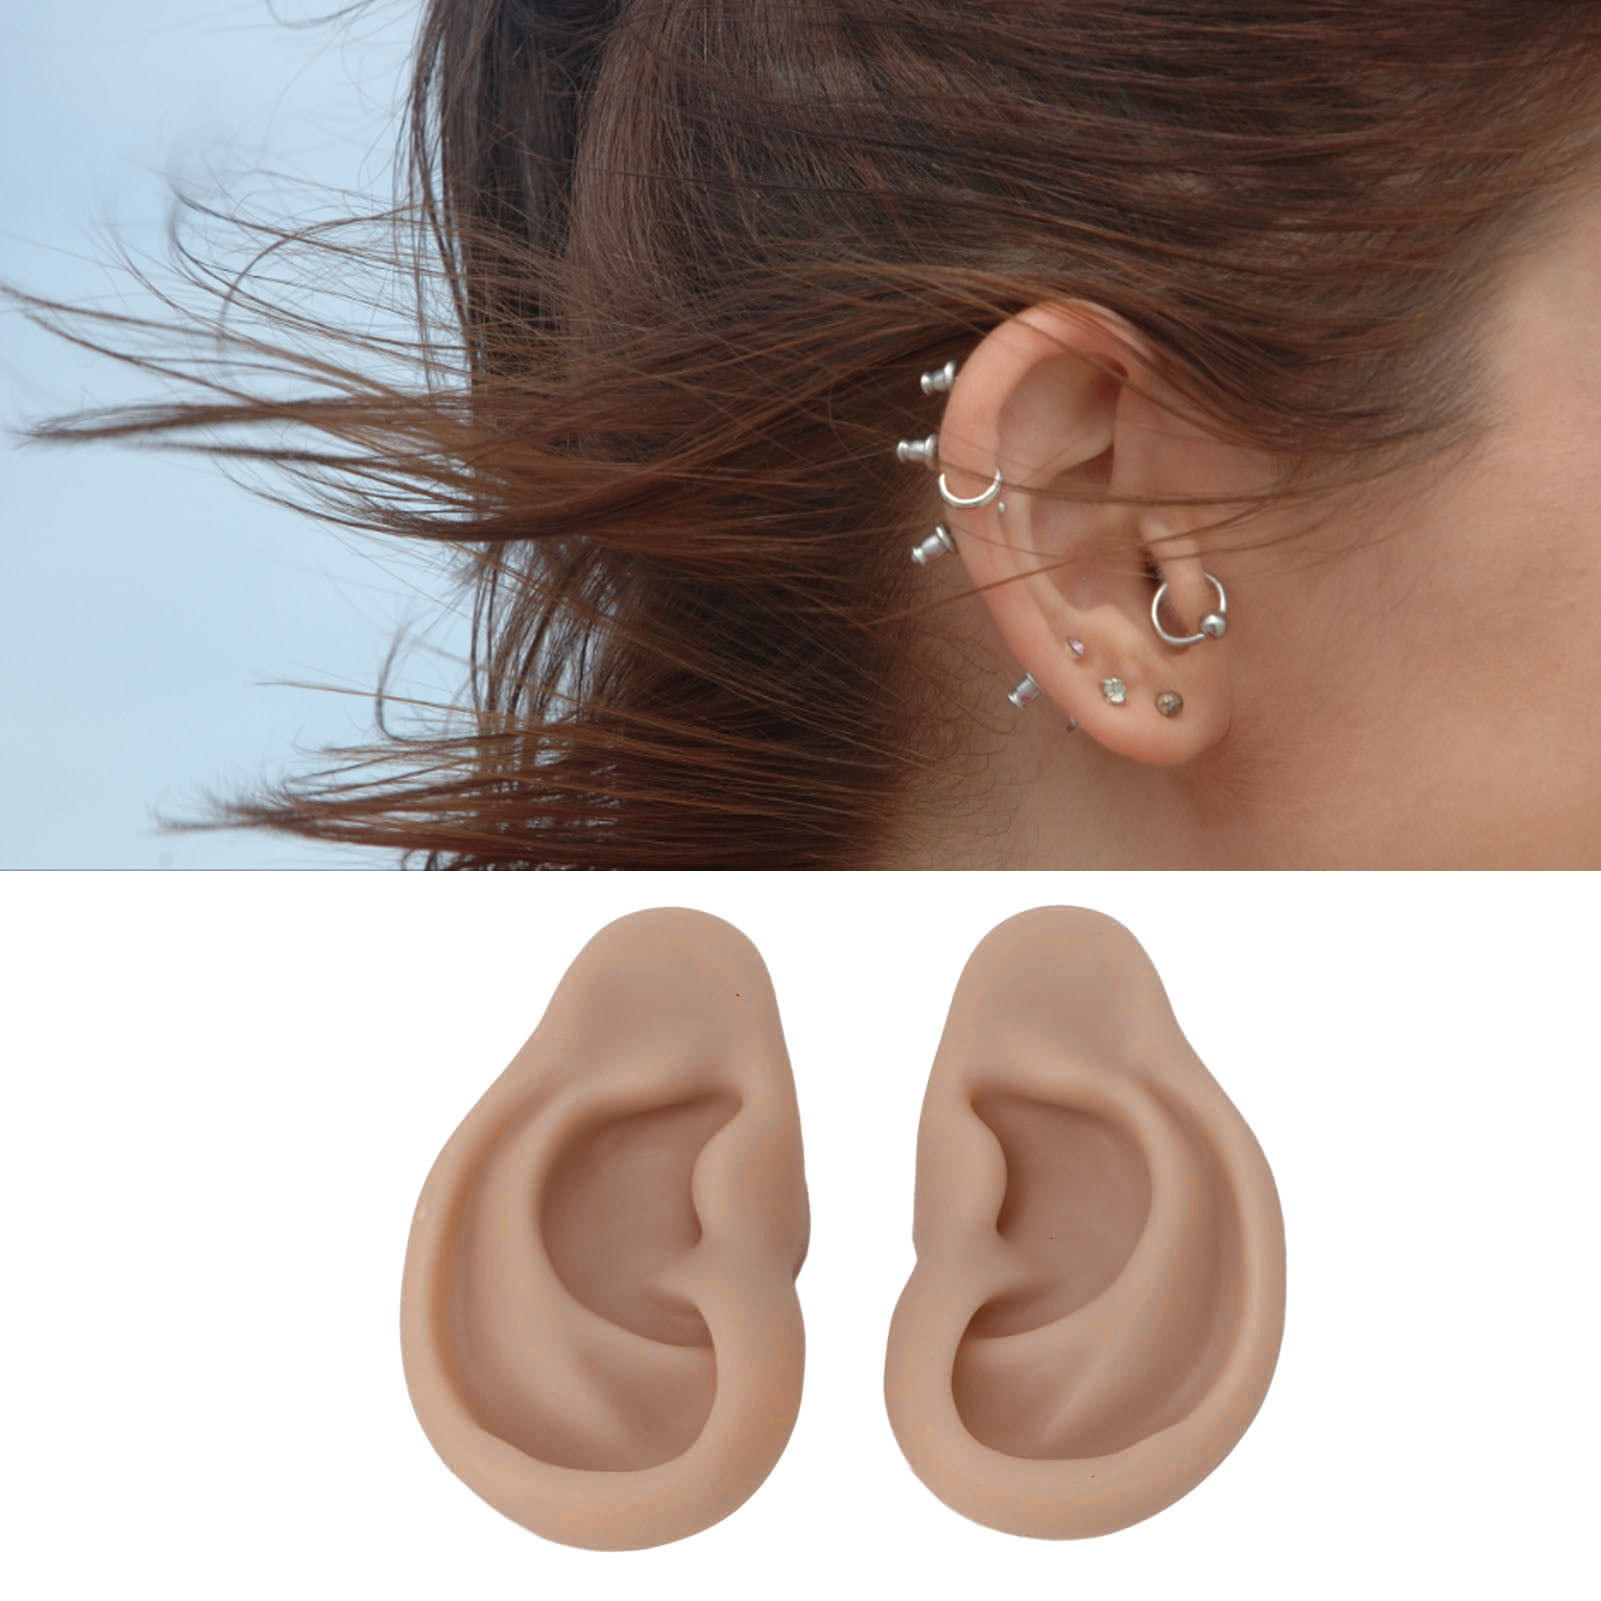 Baluue Ear Model Silicone Tunnels for Ears Silicone Earrings Ear Piercing  Earrings Simulation Ear Model Earrings